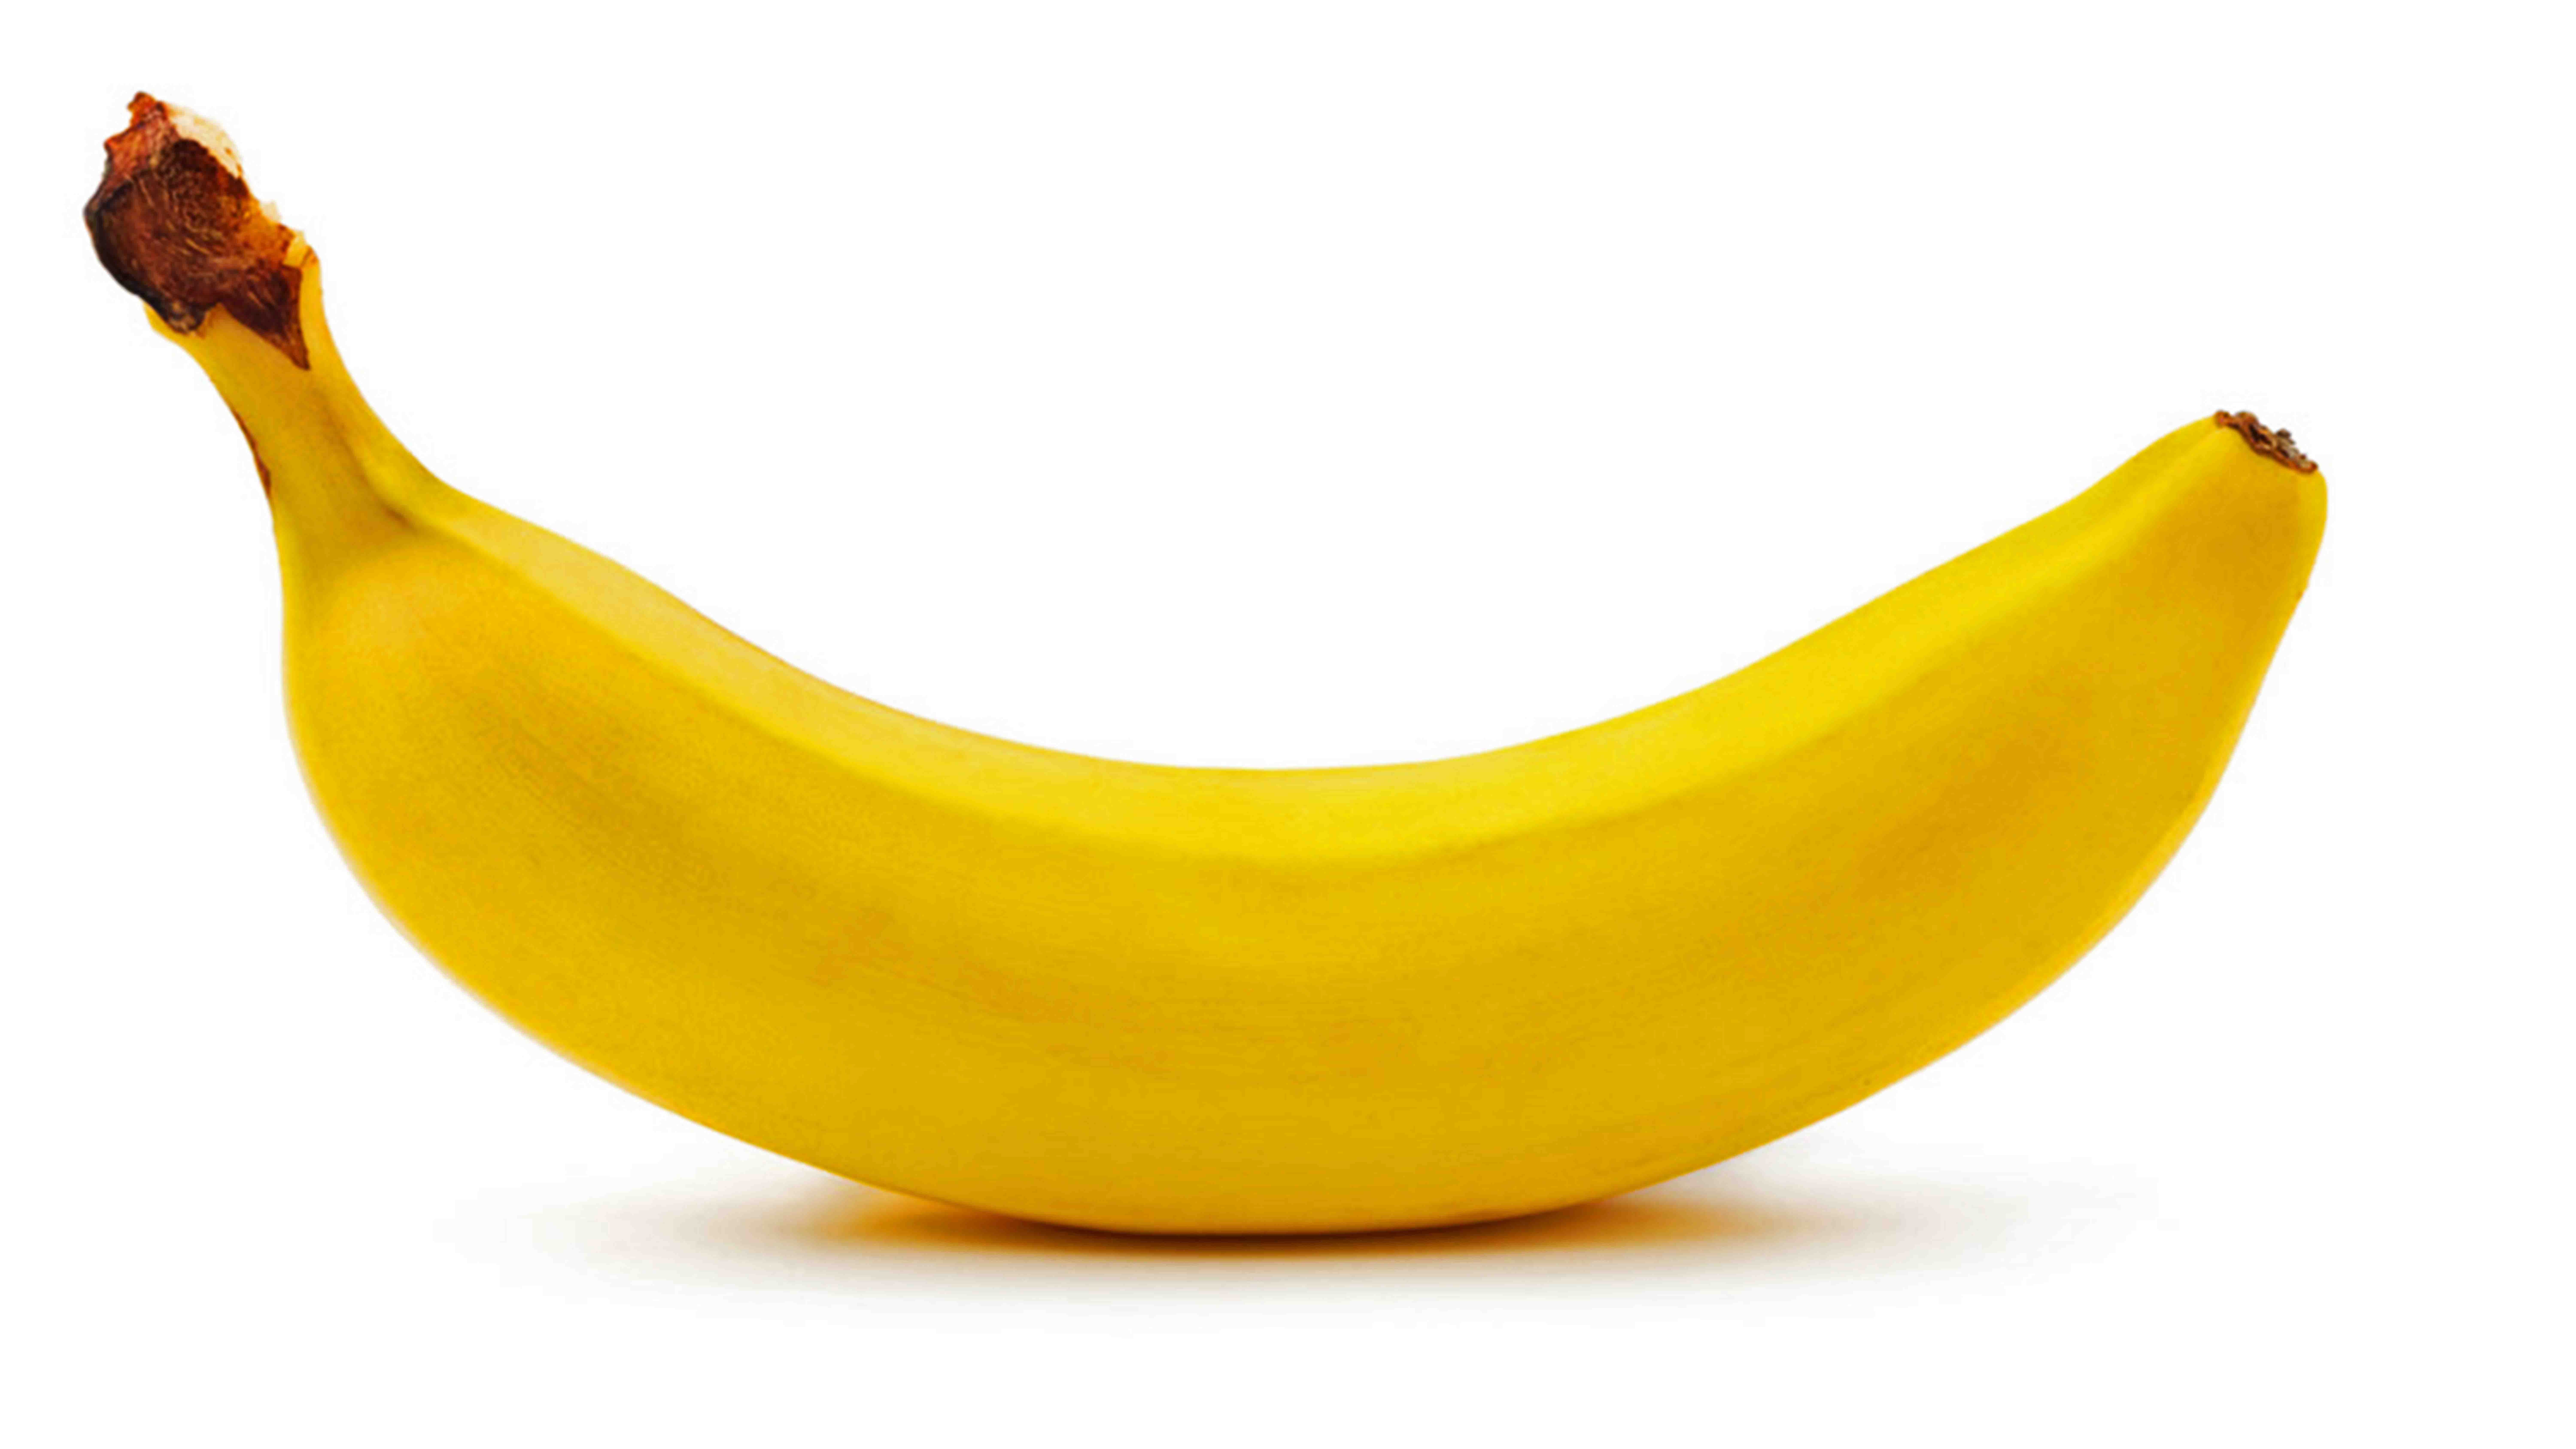 Banana #10